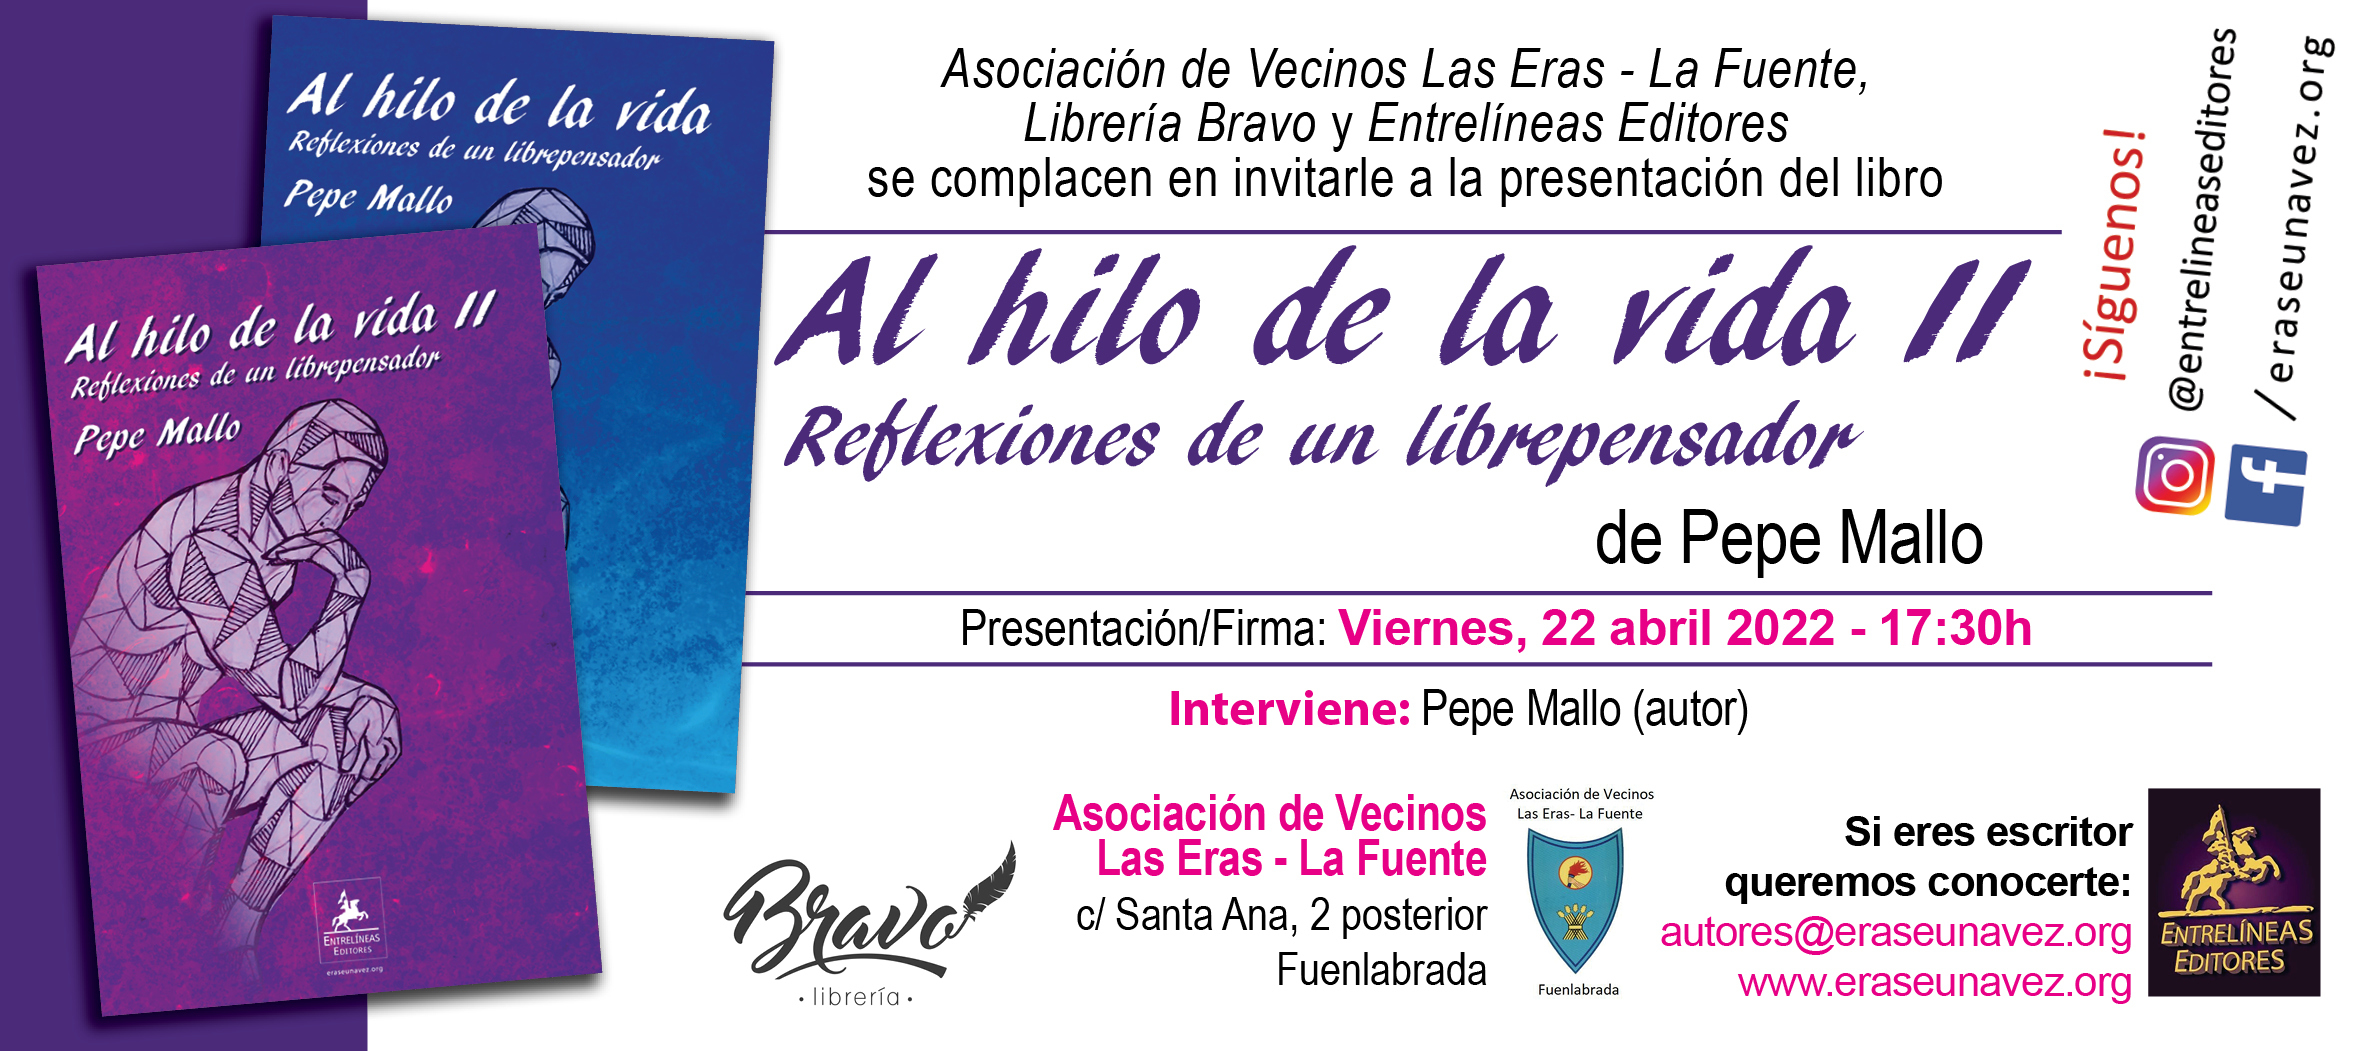 2022-04-22_Al_hilo_de_la_vida_II_-_invitacion